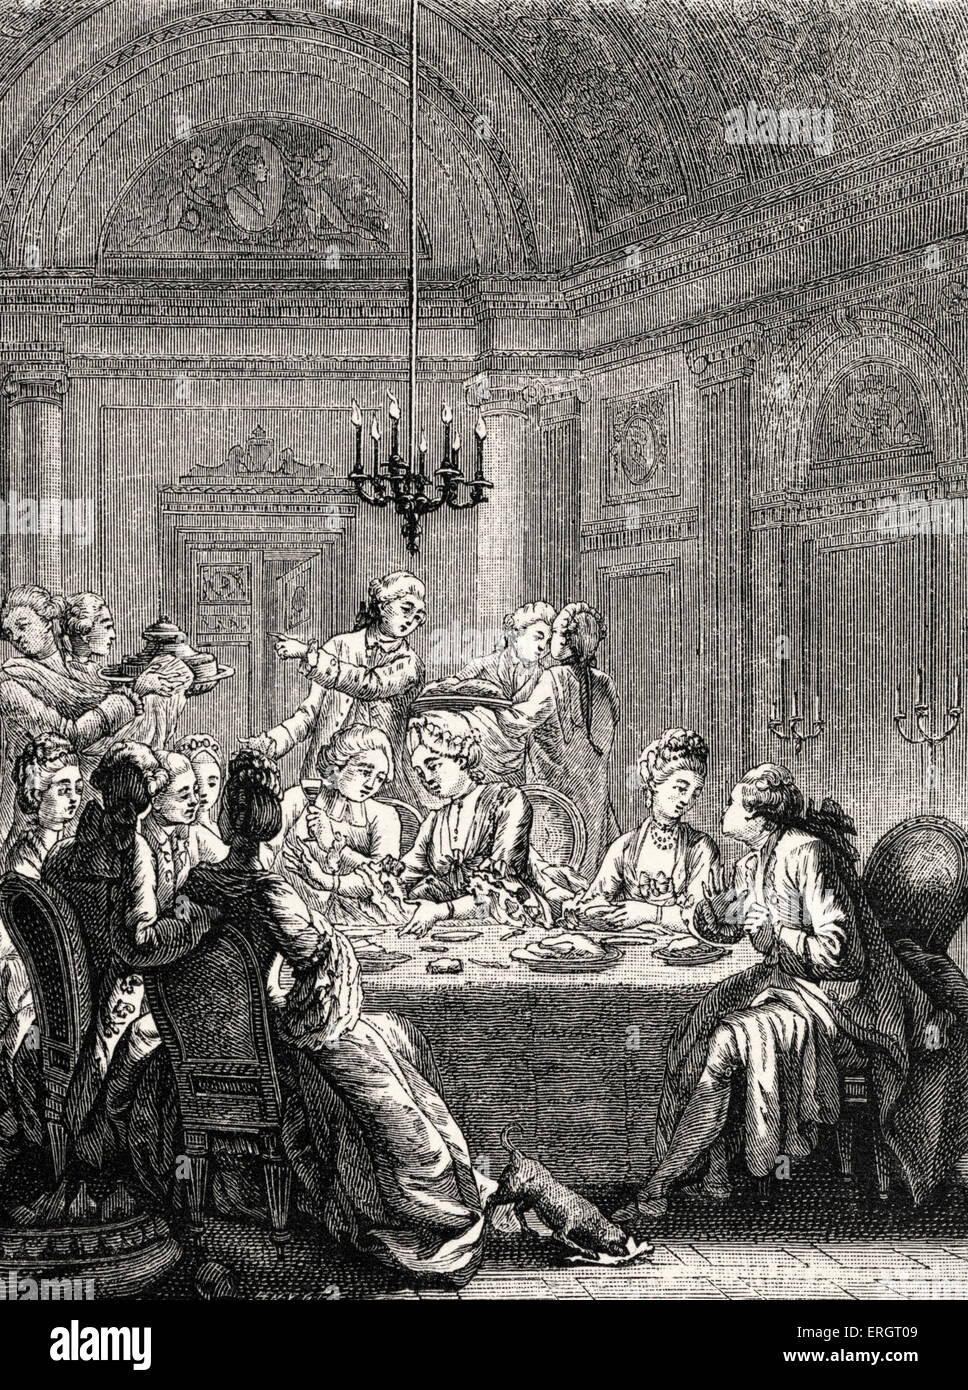 Alltag in der Geschichte Frankreichs: eine aristokratische Abendmahl im 18. Jahrhundert Frankreich während der Herrschaft von Louis XV. Highsociety Essen / Stockfoto